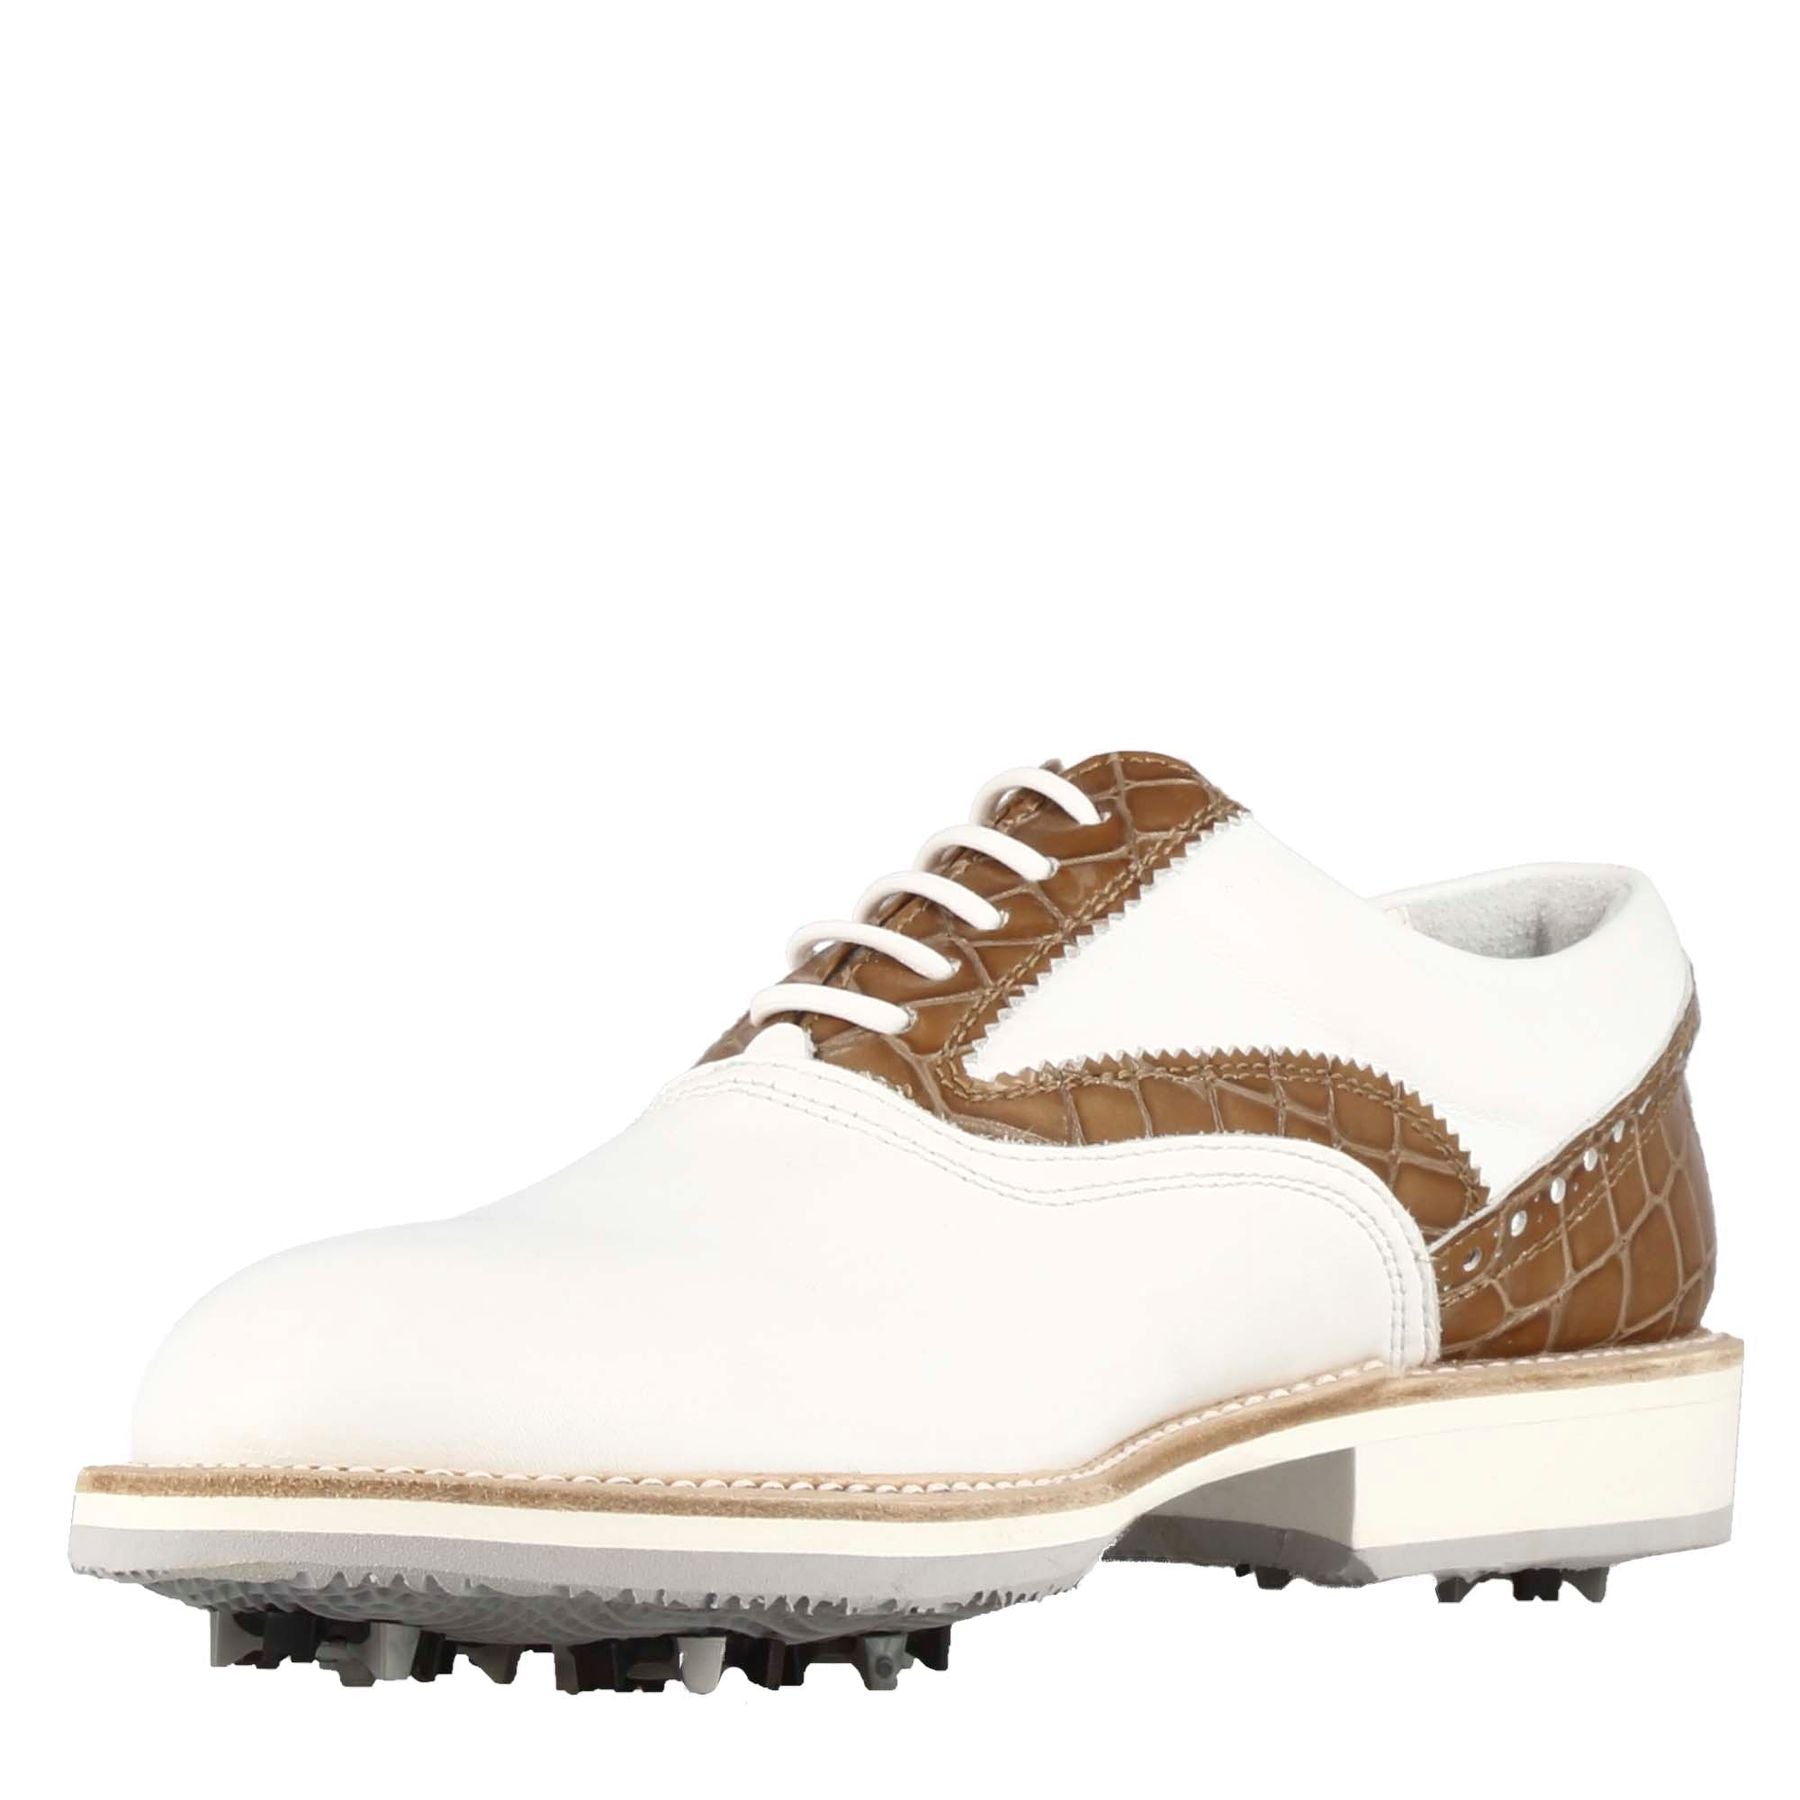 Handgefertigte Herren-Golfschuhe aus weißem Leder mit hellbraunen Details